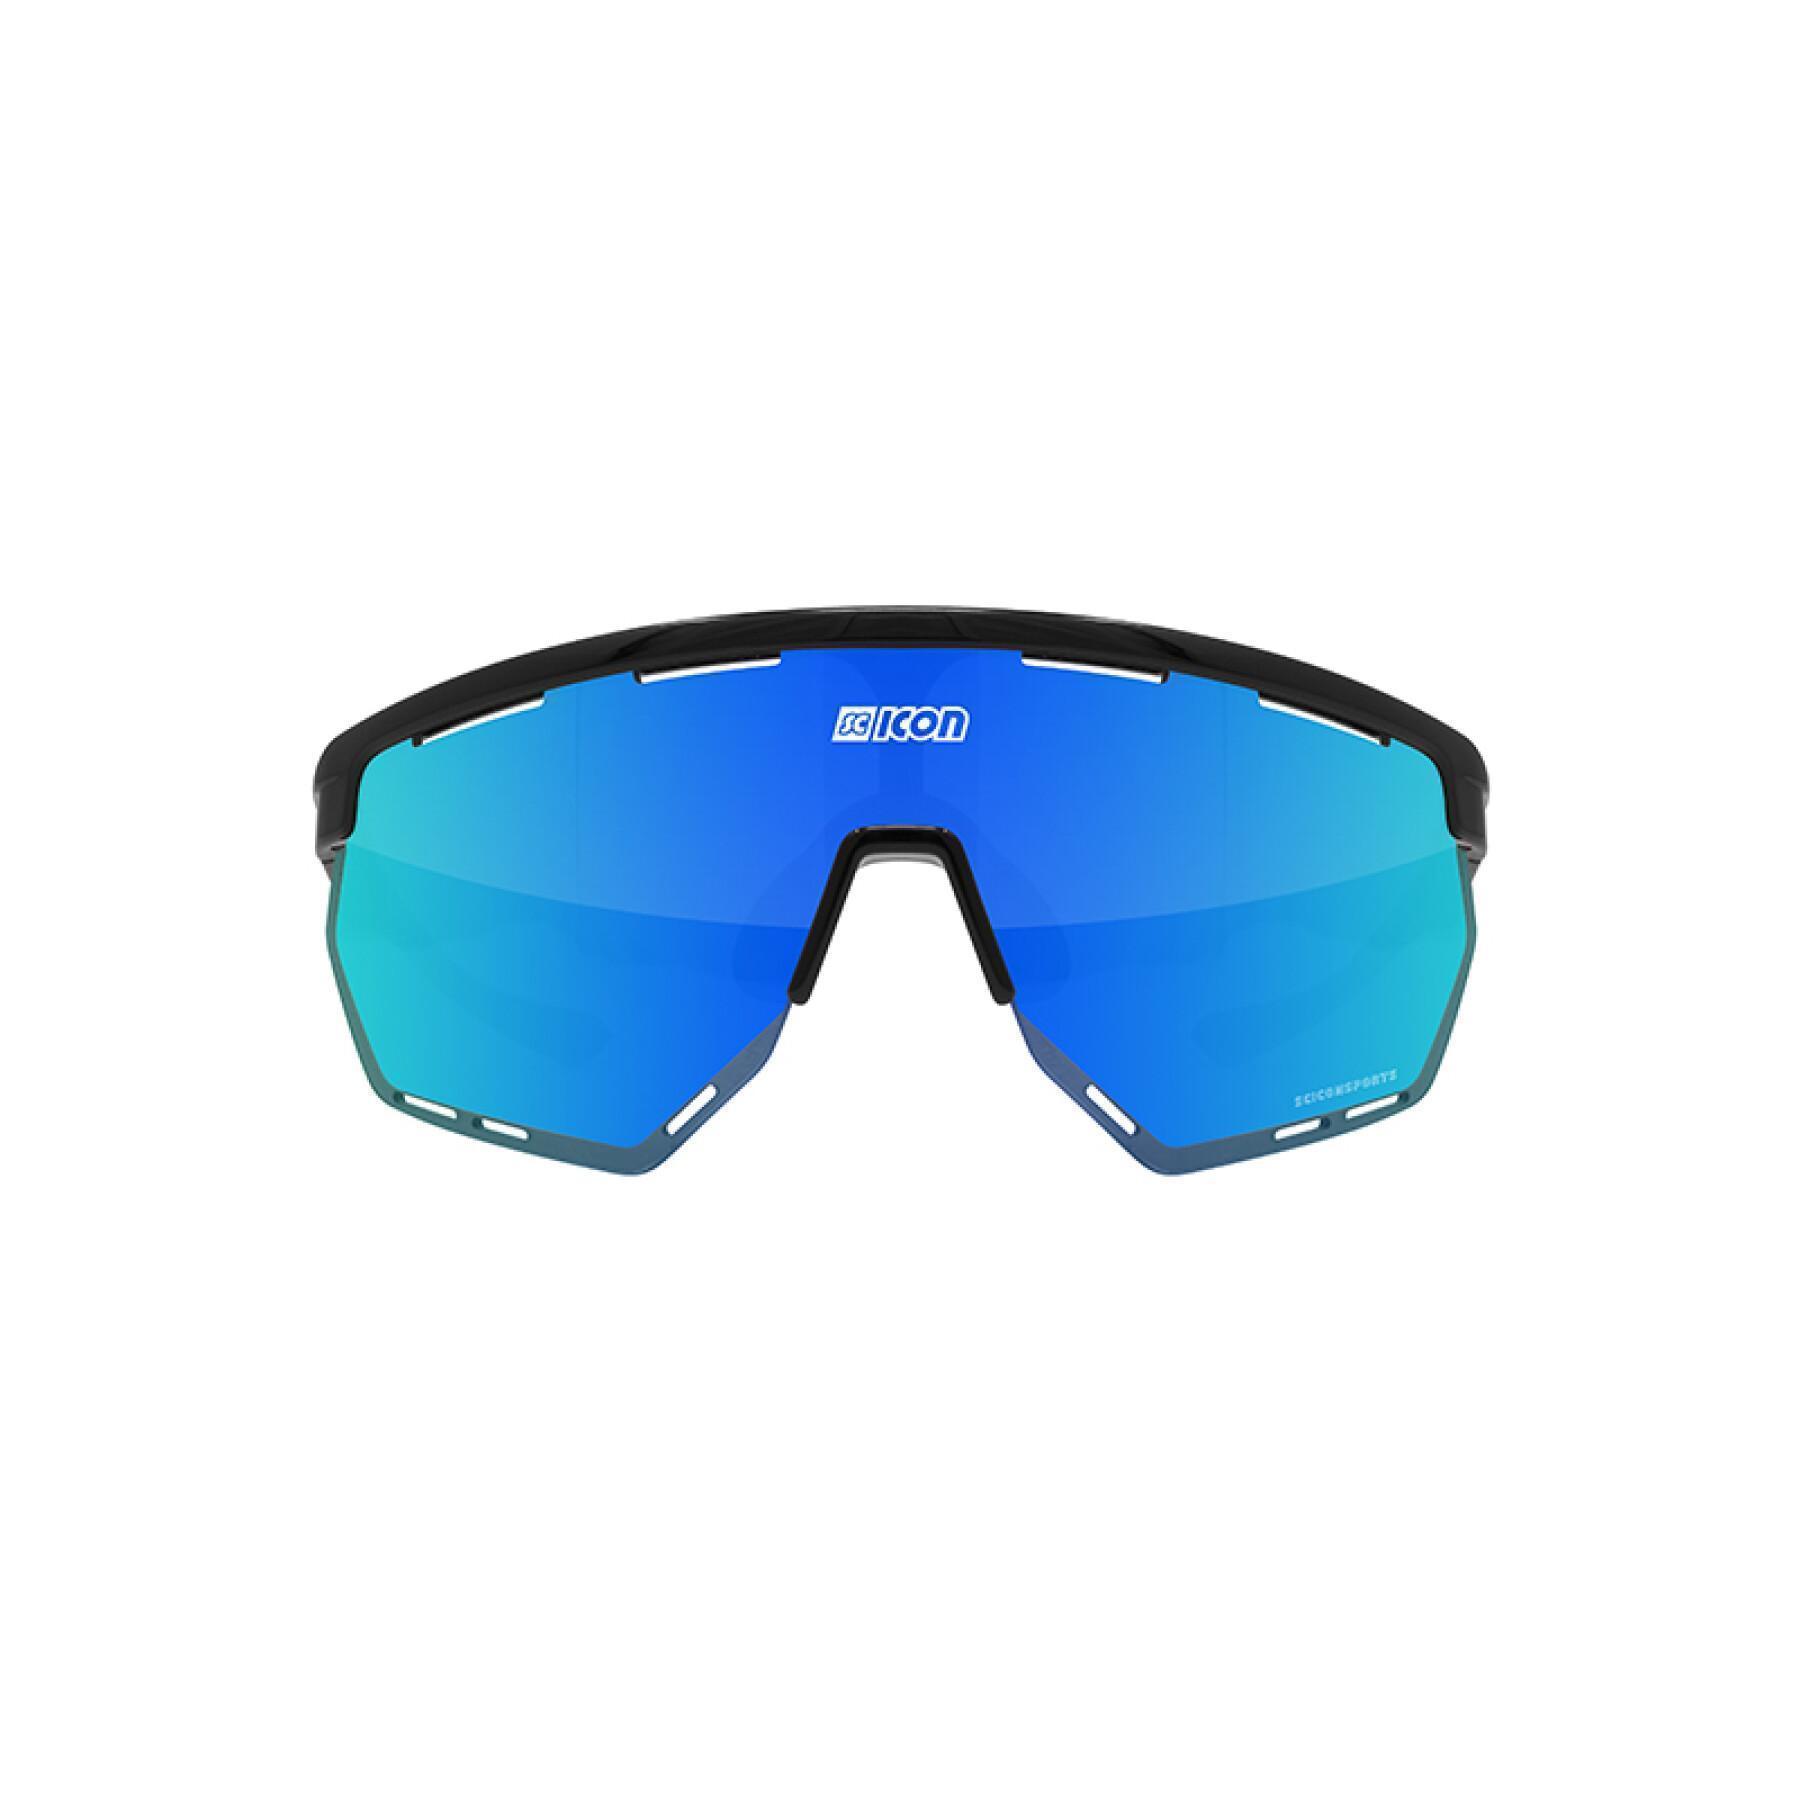 Glasögon Scicon aerowing scnpp verre multi-reflet bleues